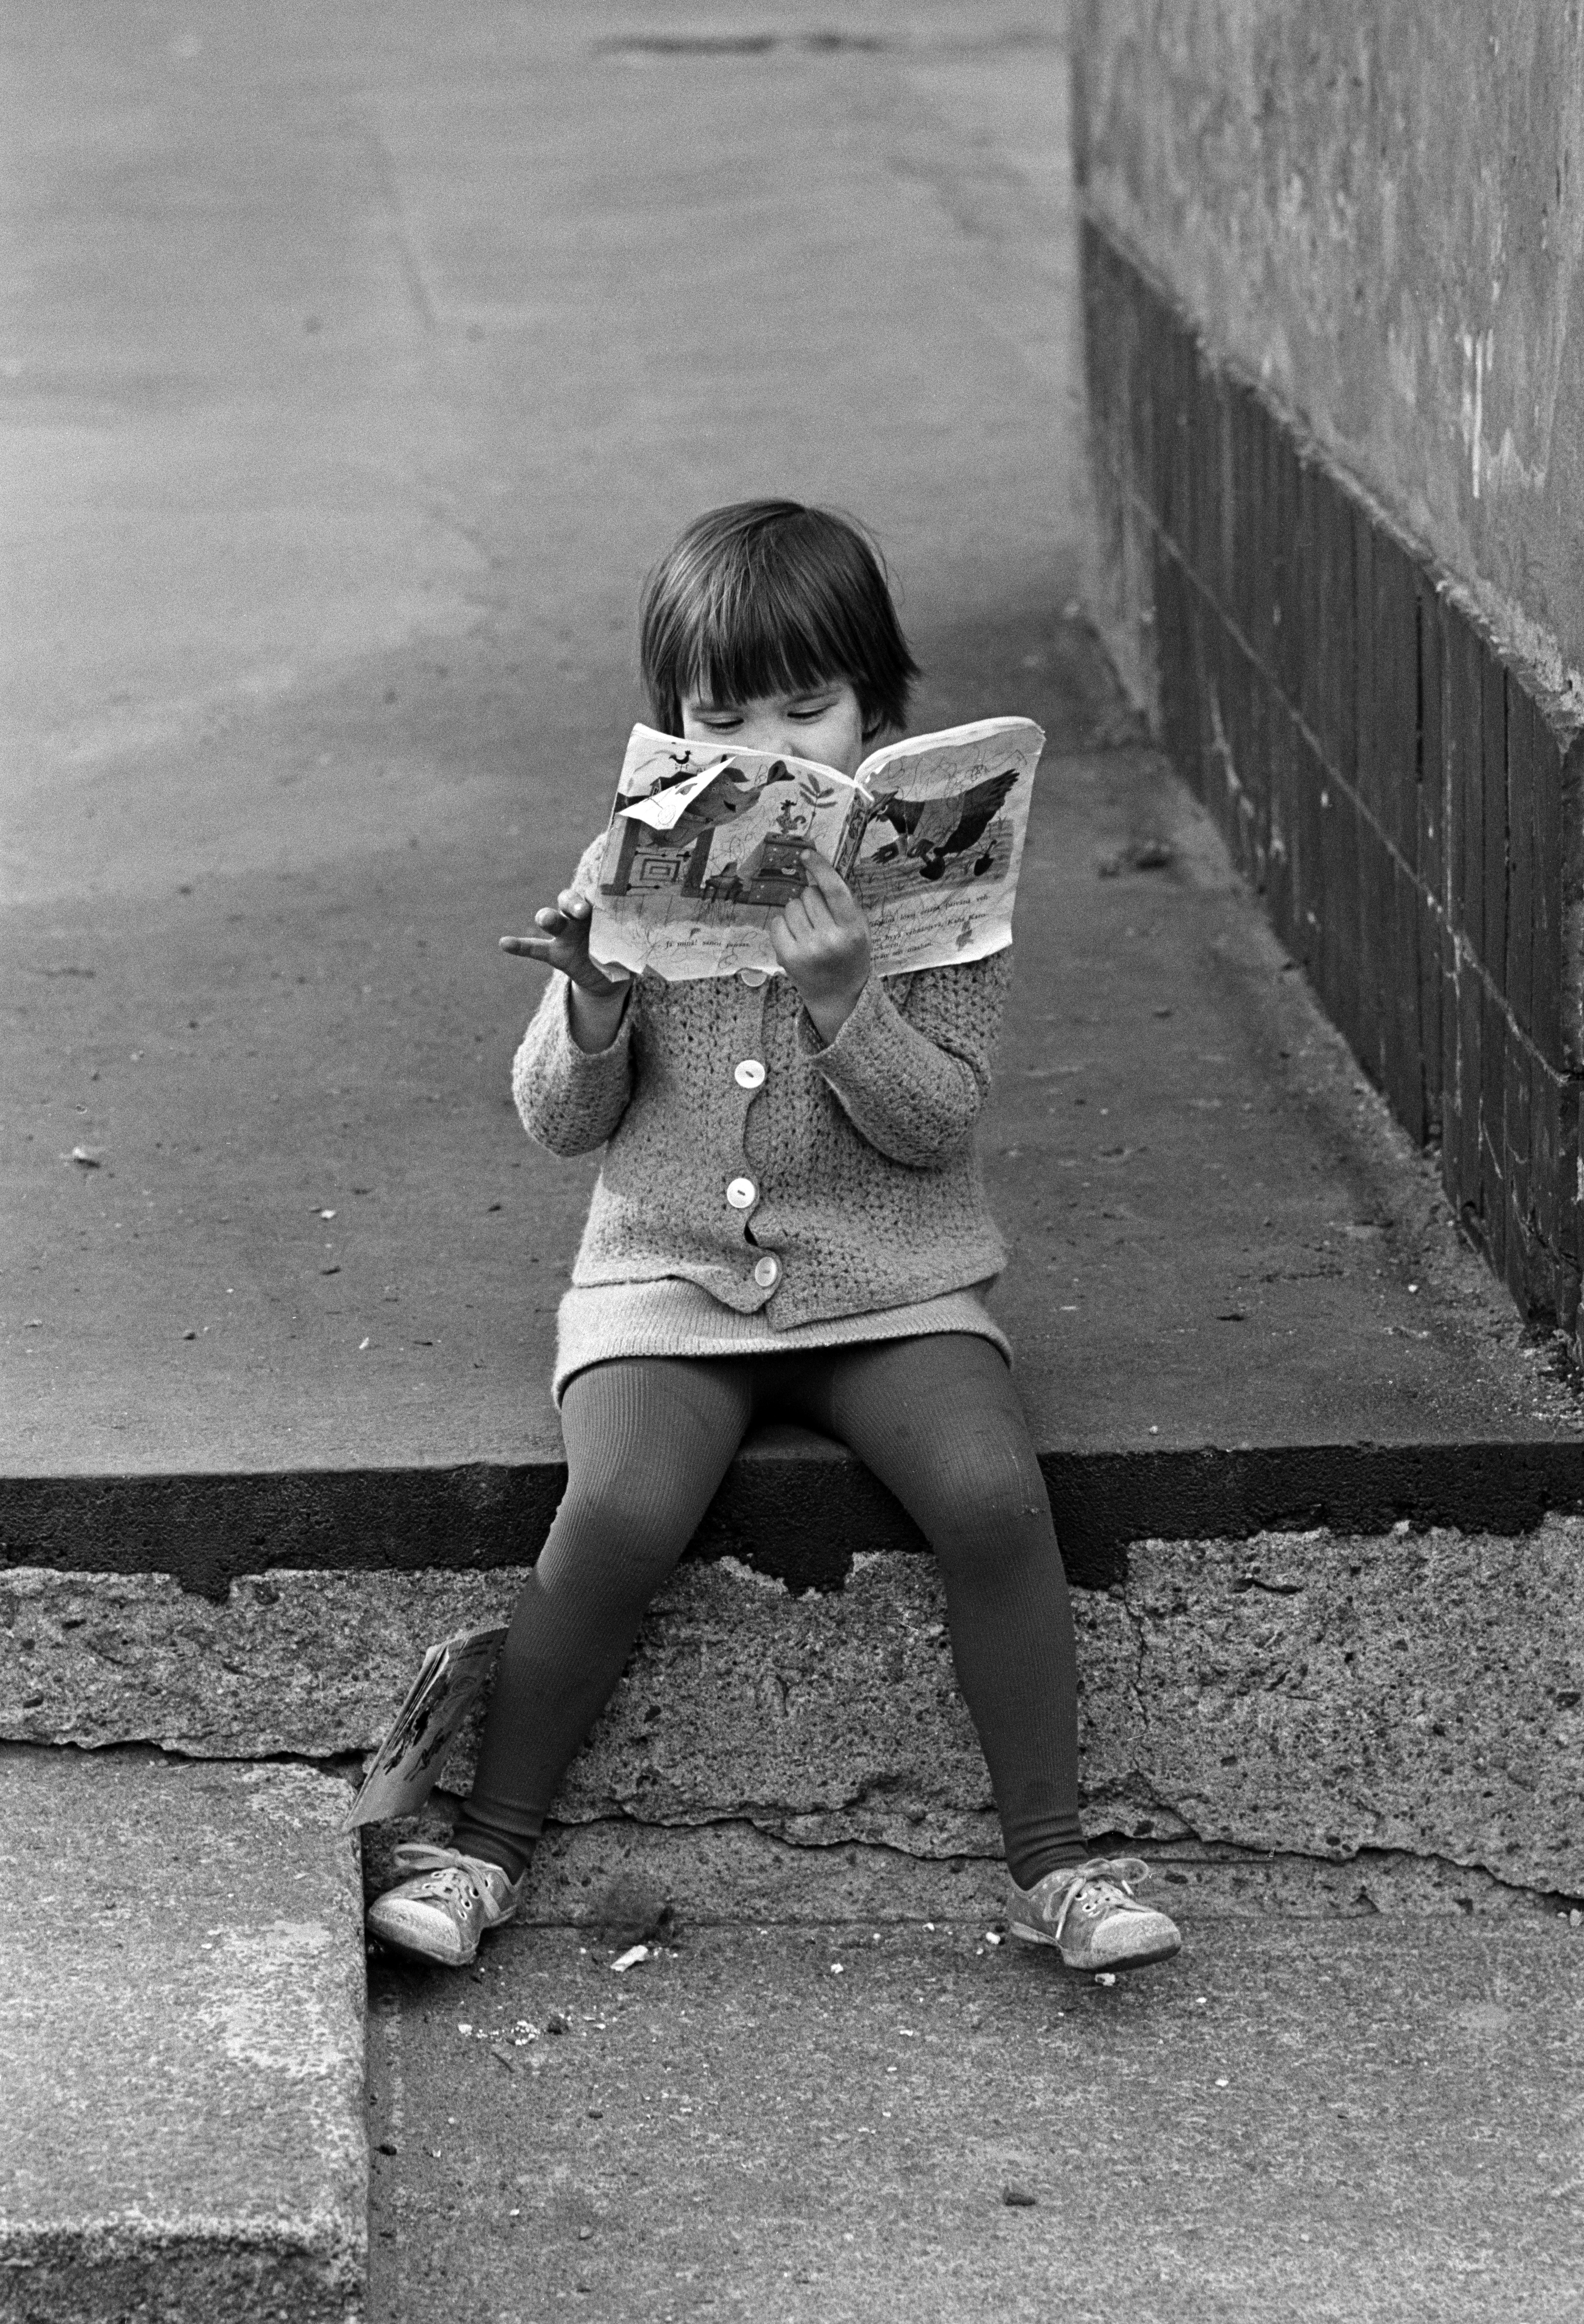 Repaleista kirjaa lukeva tyttö istumassa Viides linja 4:n pihalla. Tytöllä yllään neuletakki.